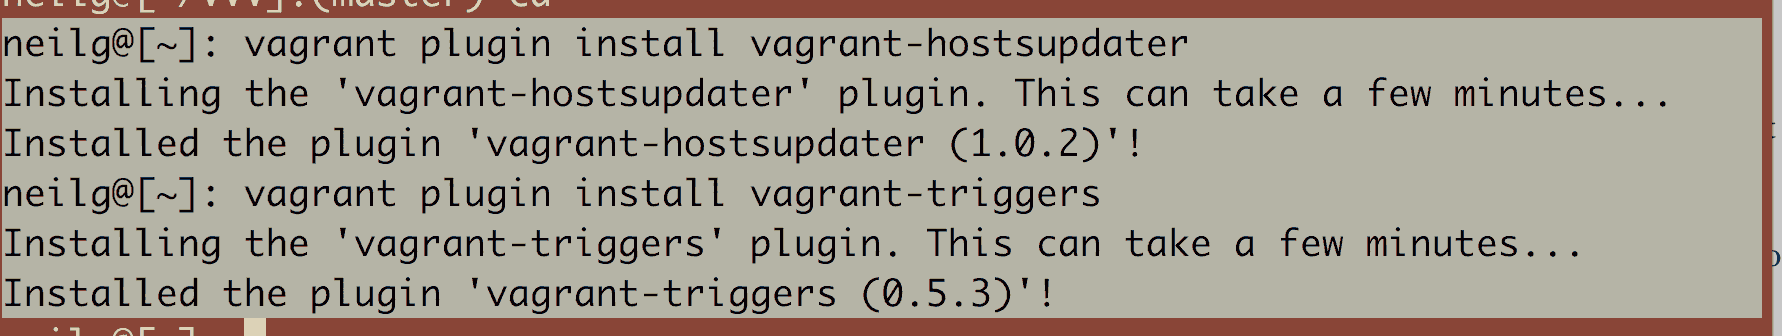 vagrant-plugins